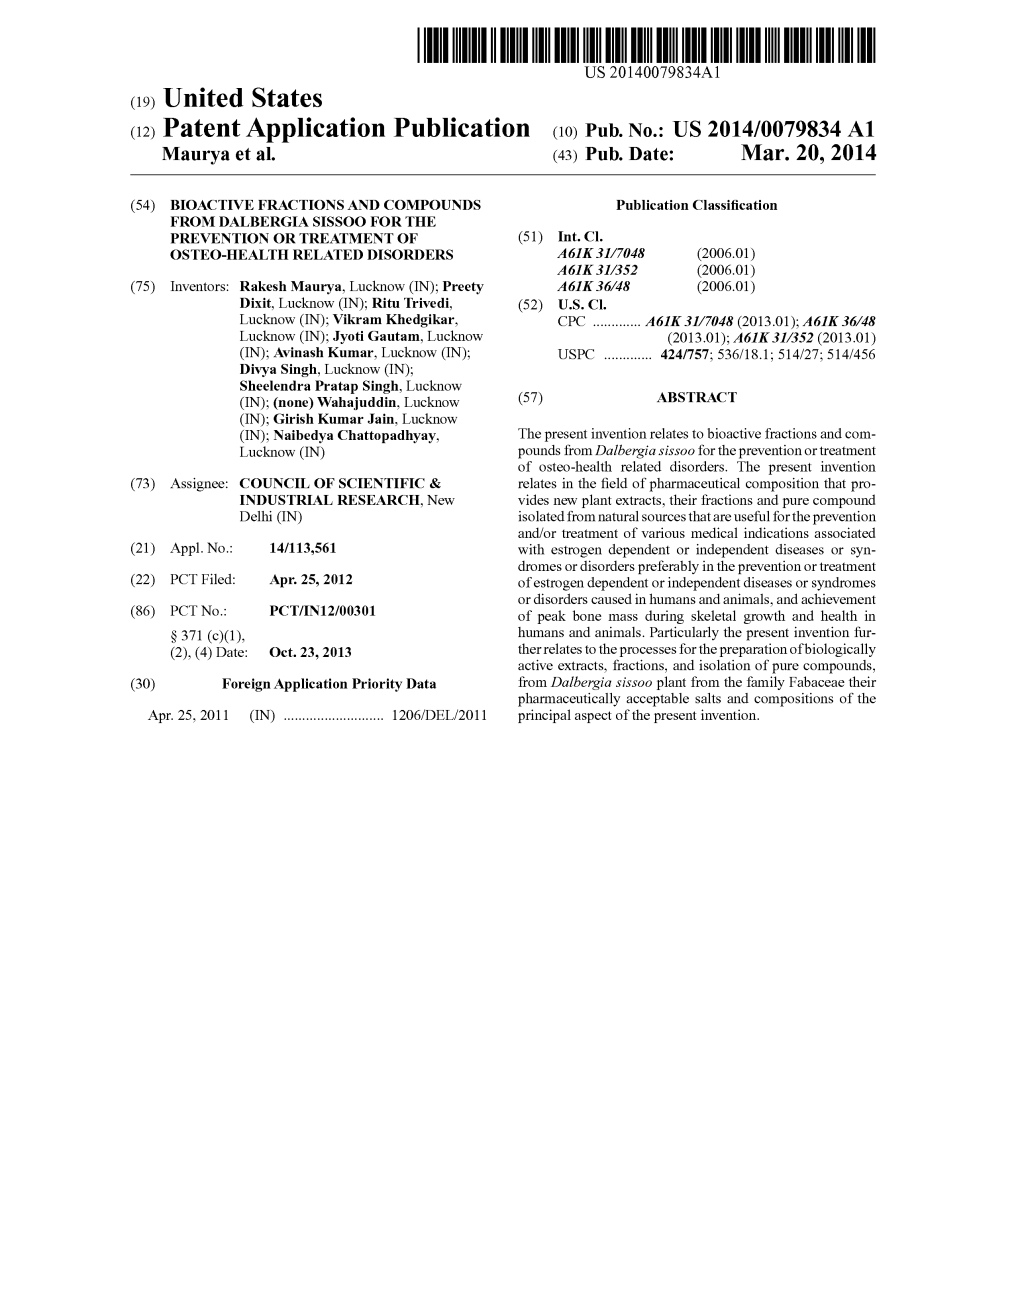 (12) Patent Application Publication (10) Pub. No.: US 2014/0079834 A1 Maurya Et Al